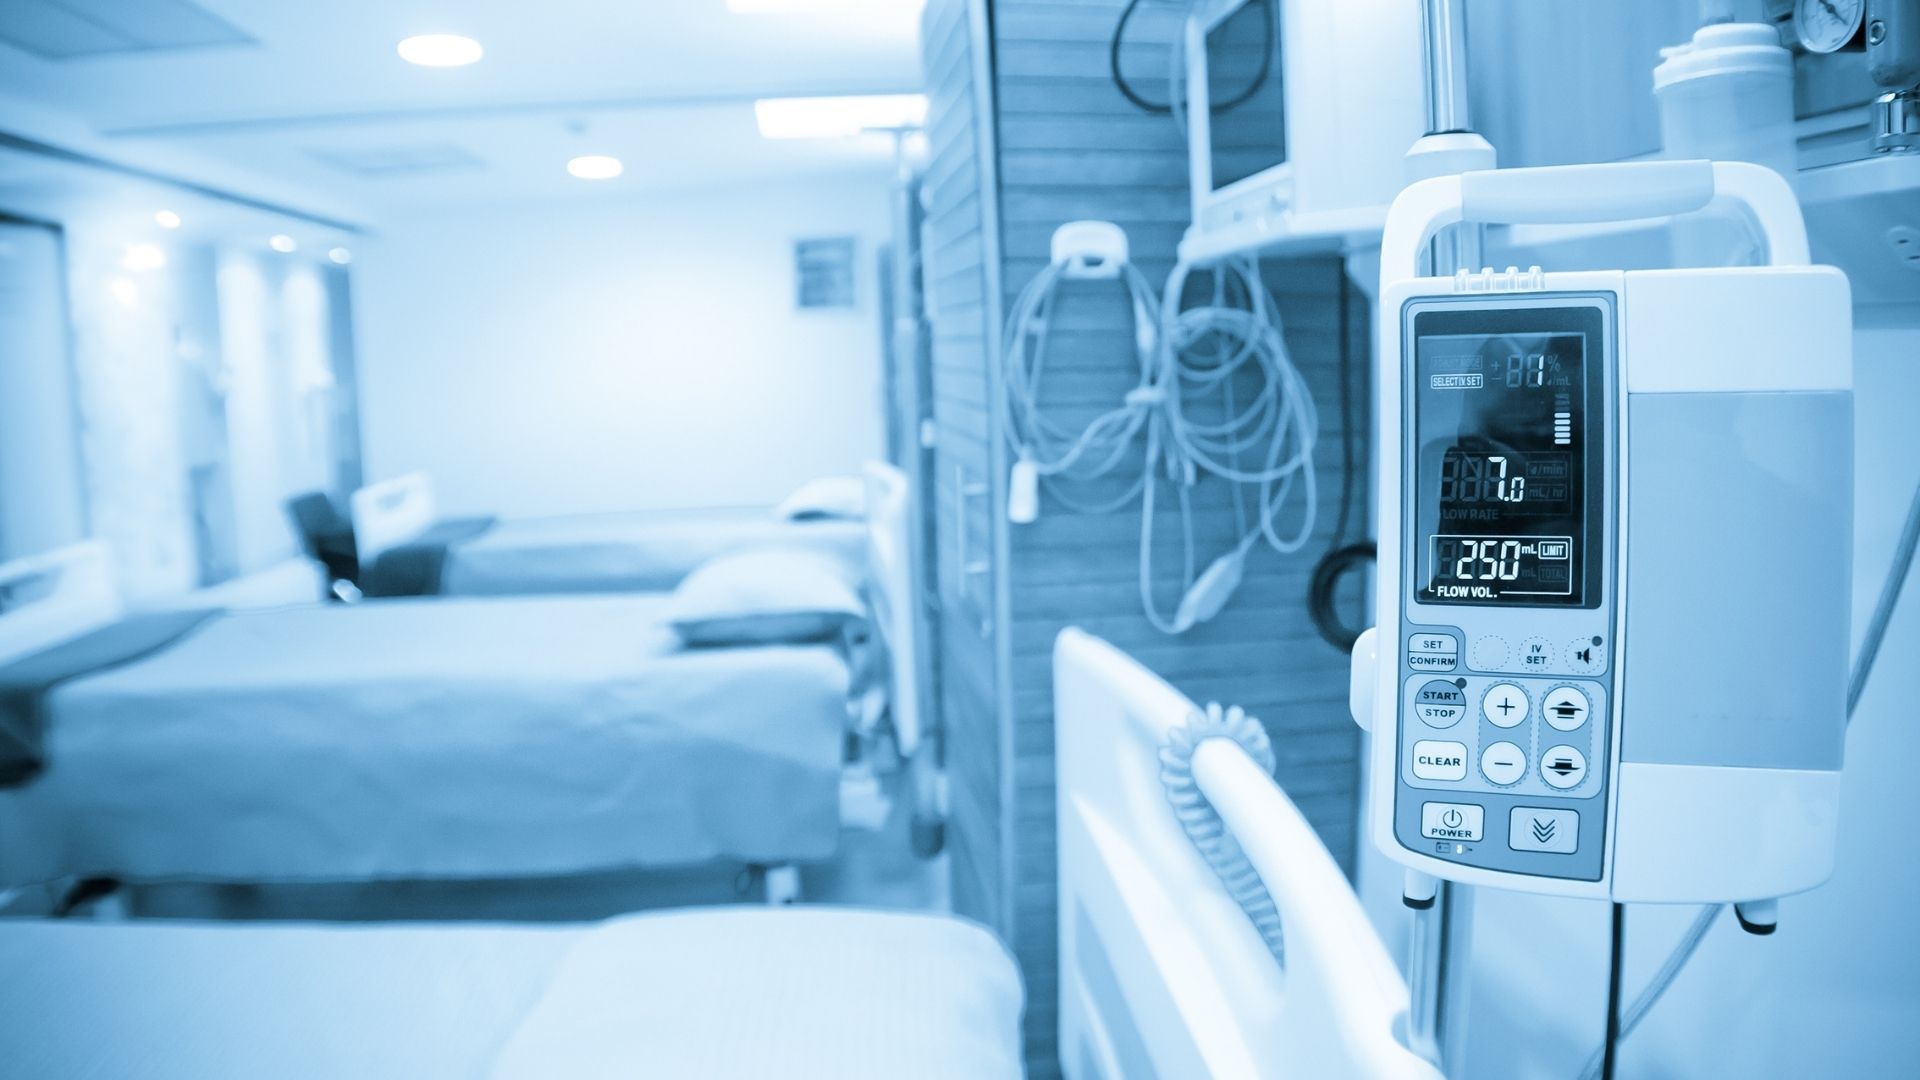 Em um ano, operadoras injetaram R$ 4 bilhões em rede hospitalar